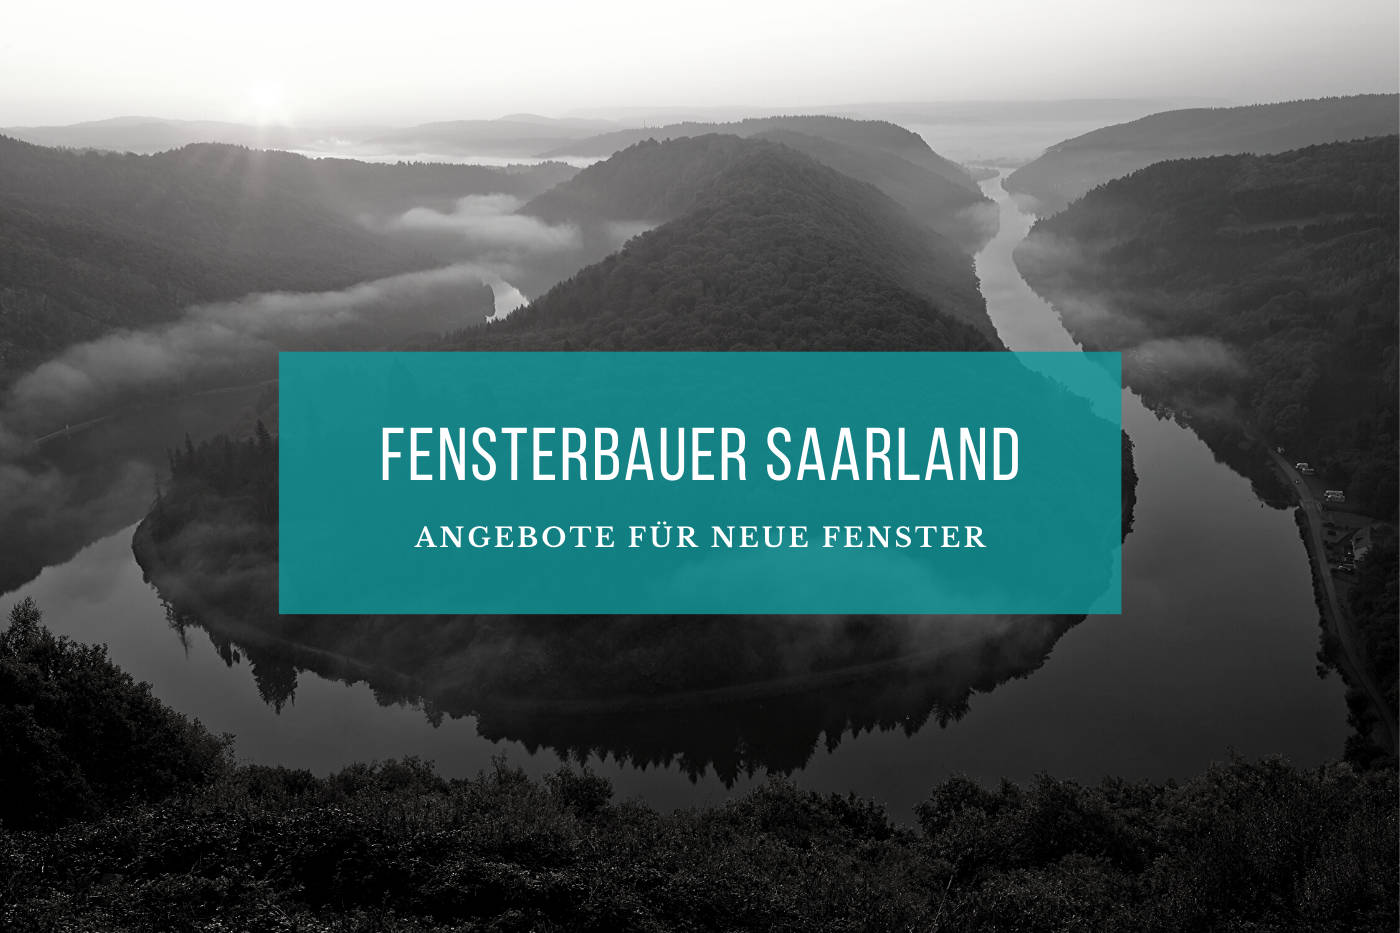 Fensterbauer Saarland